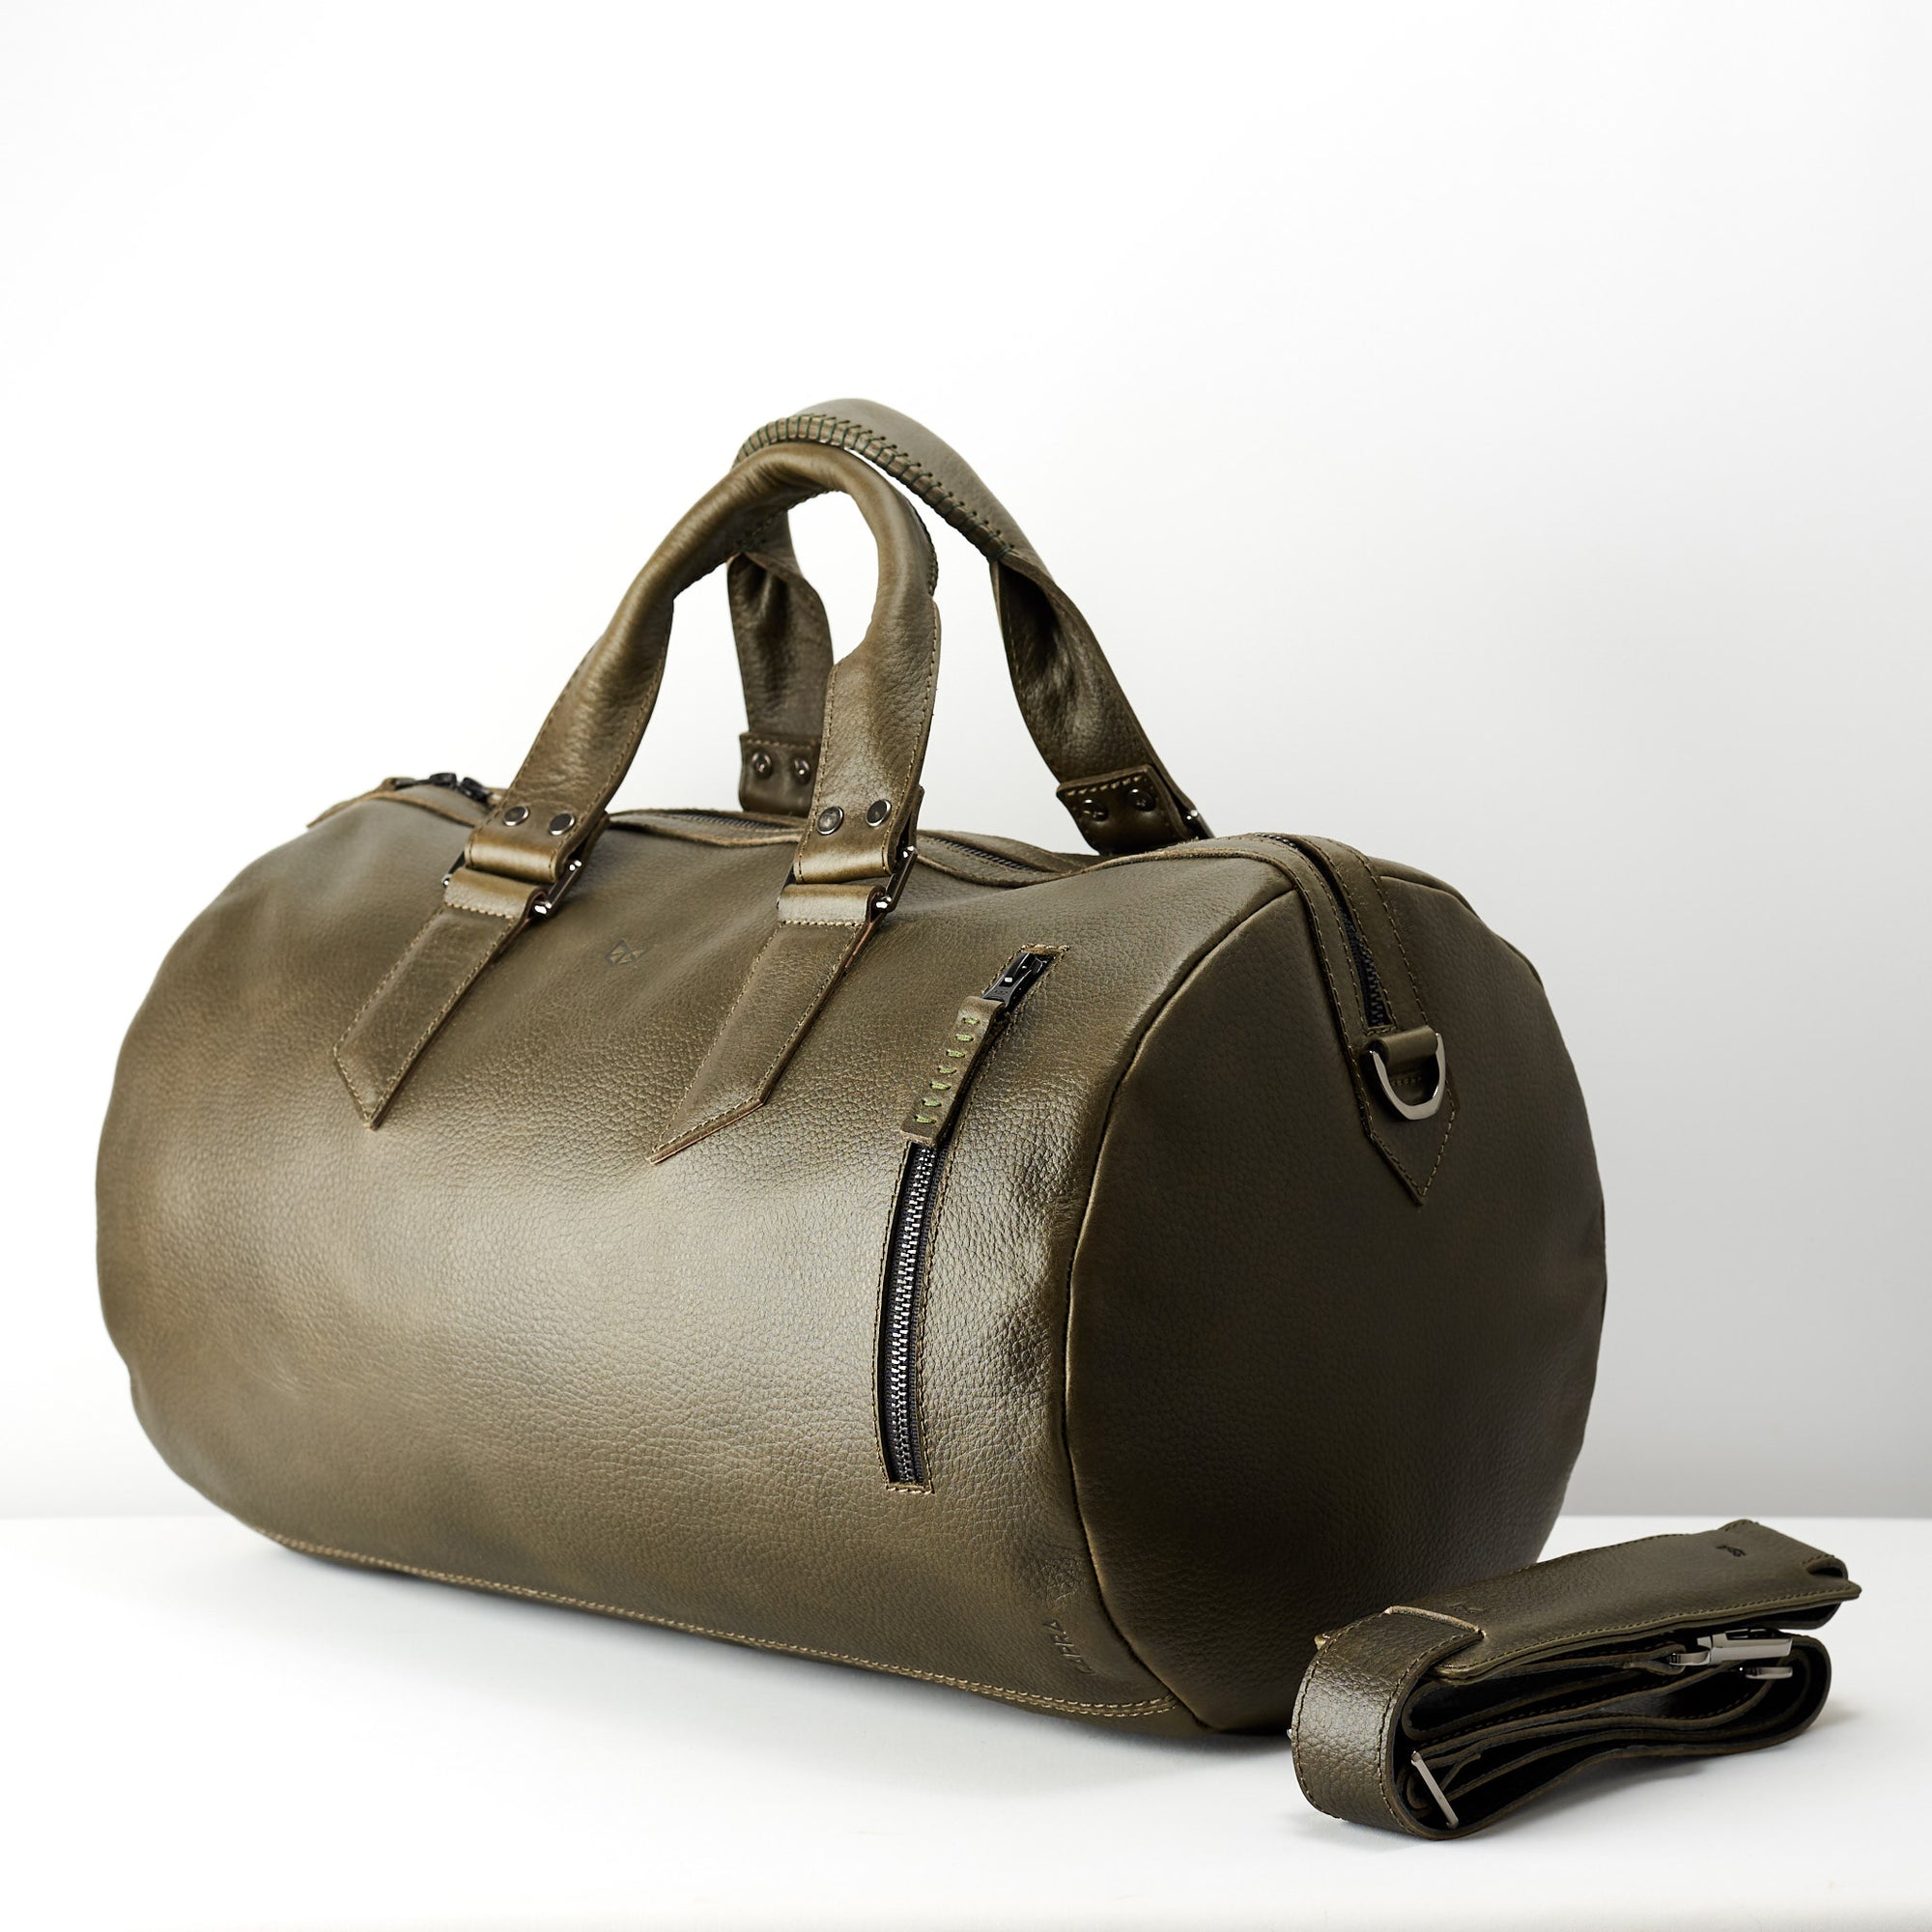 Travel luggage interior. designer leather weekender bag for men. Carryall shoulder bag 